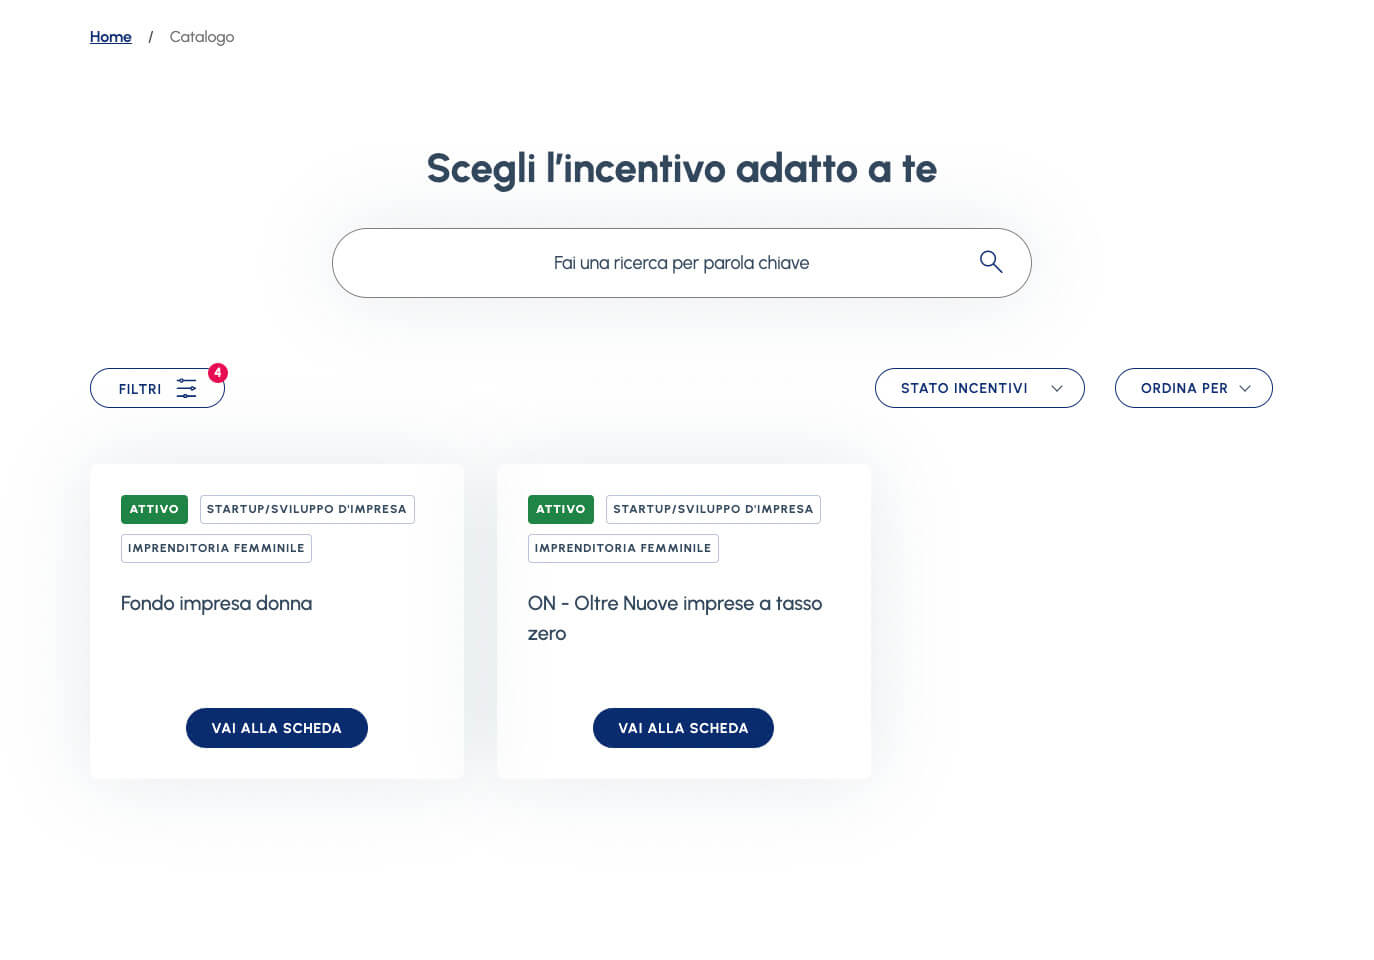 Portale incentivi.gov.it